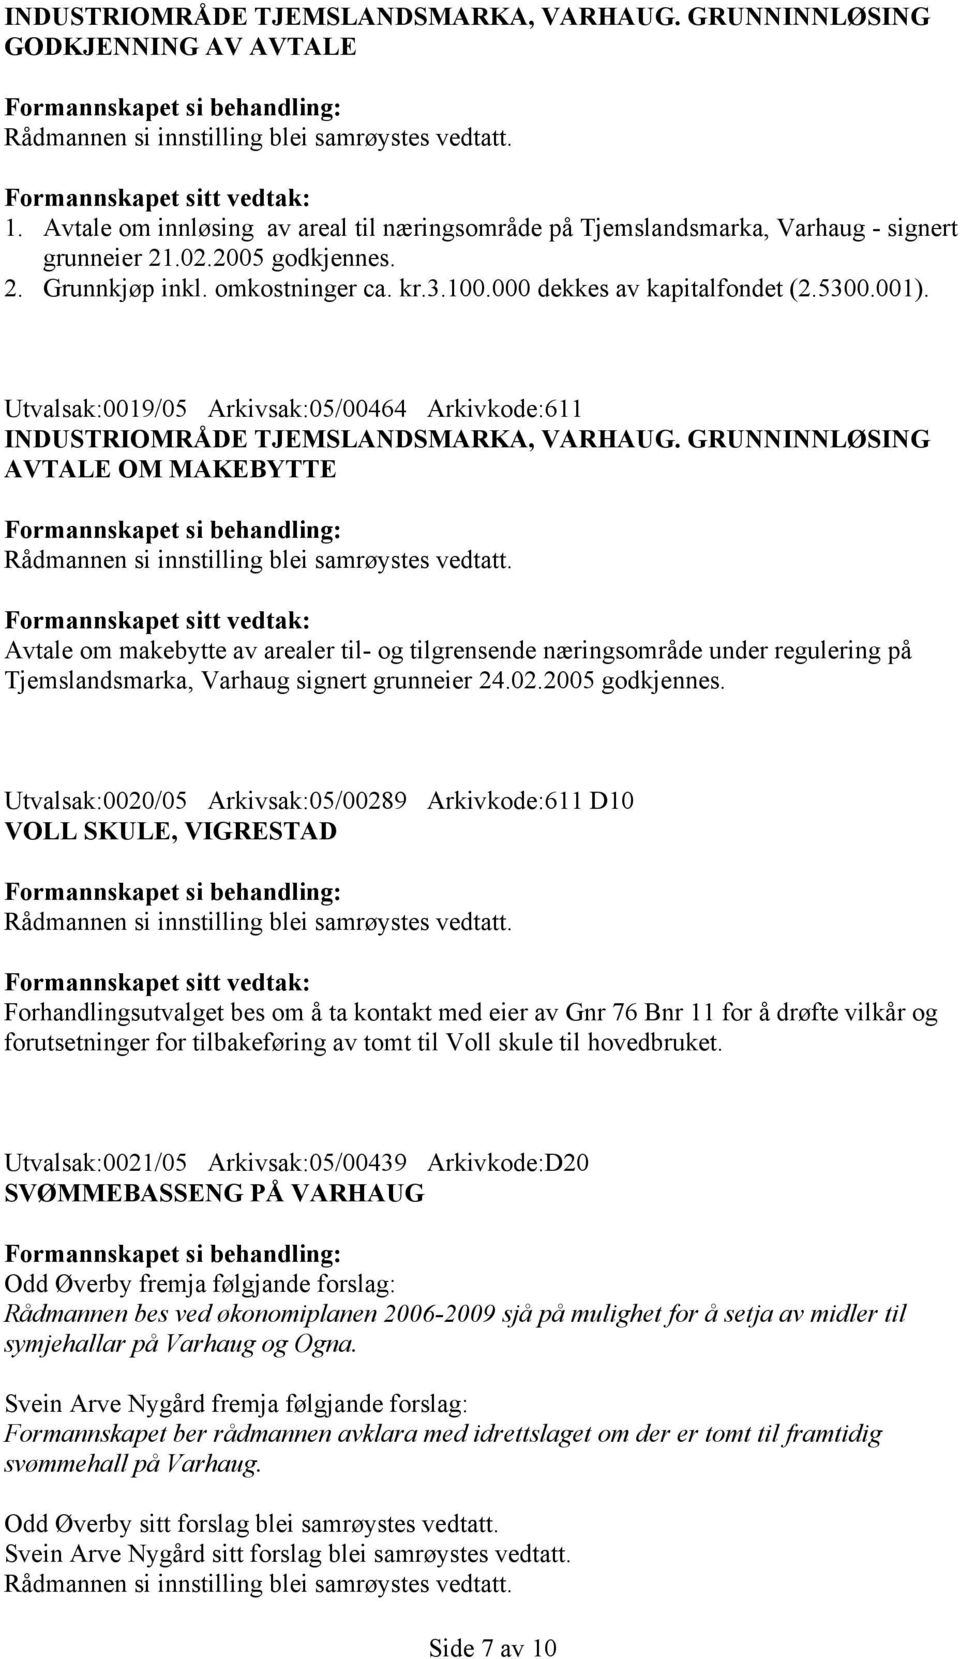 GRUNNINNLØSING AVTALE OM MAKEBYTTE Avtale om makebytte av arealer til- og tilgrensende næringsområde under regulering på Tjemslandsmarka, Varhaug signert grunneier 24.02.2005 godkjennes.